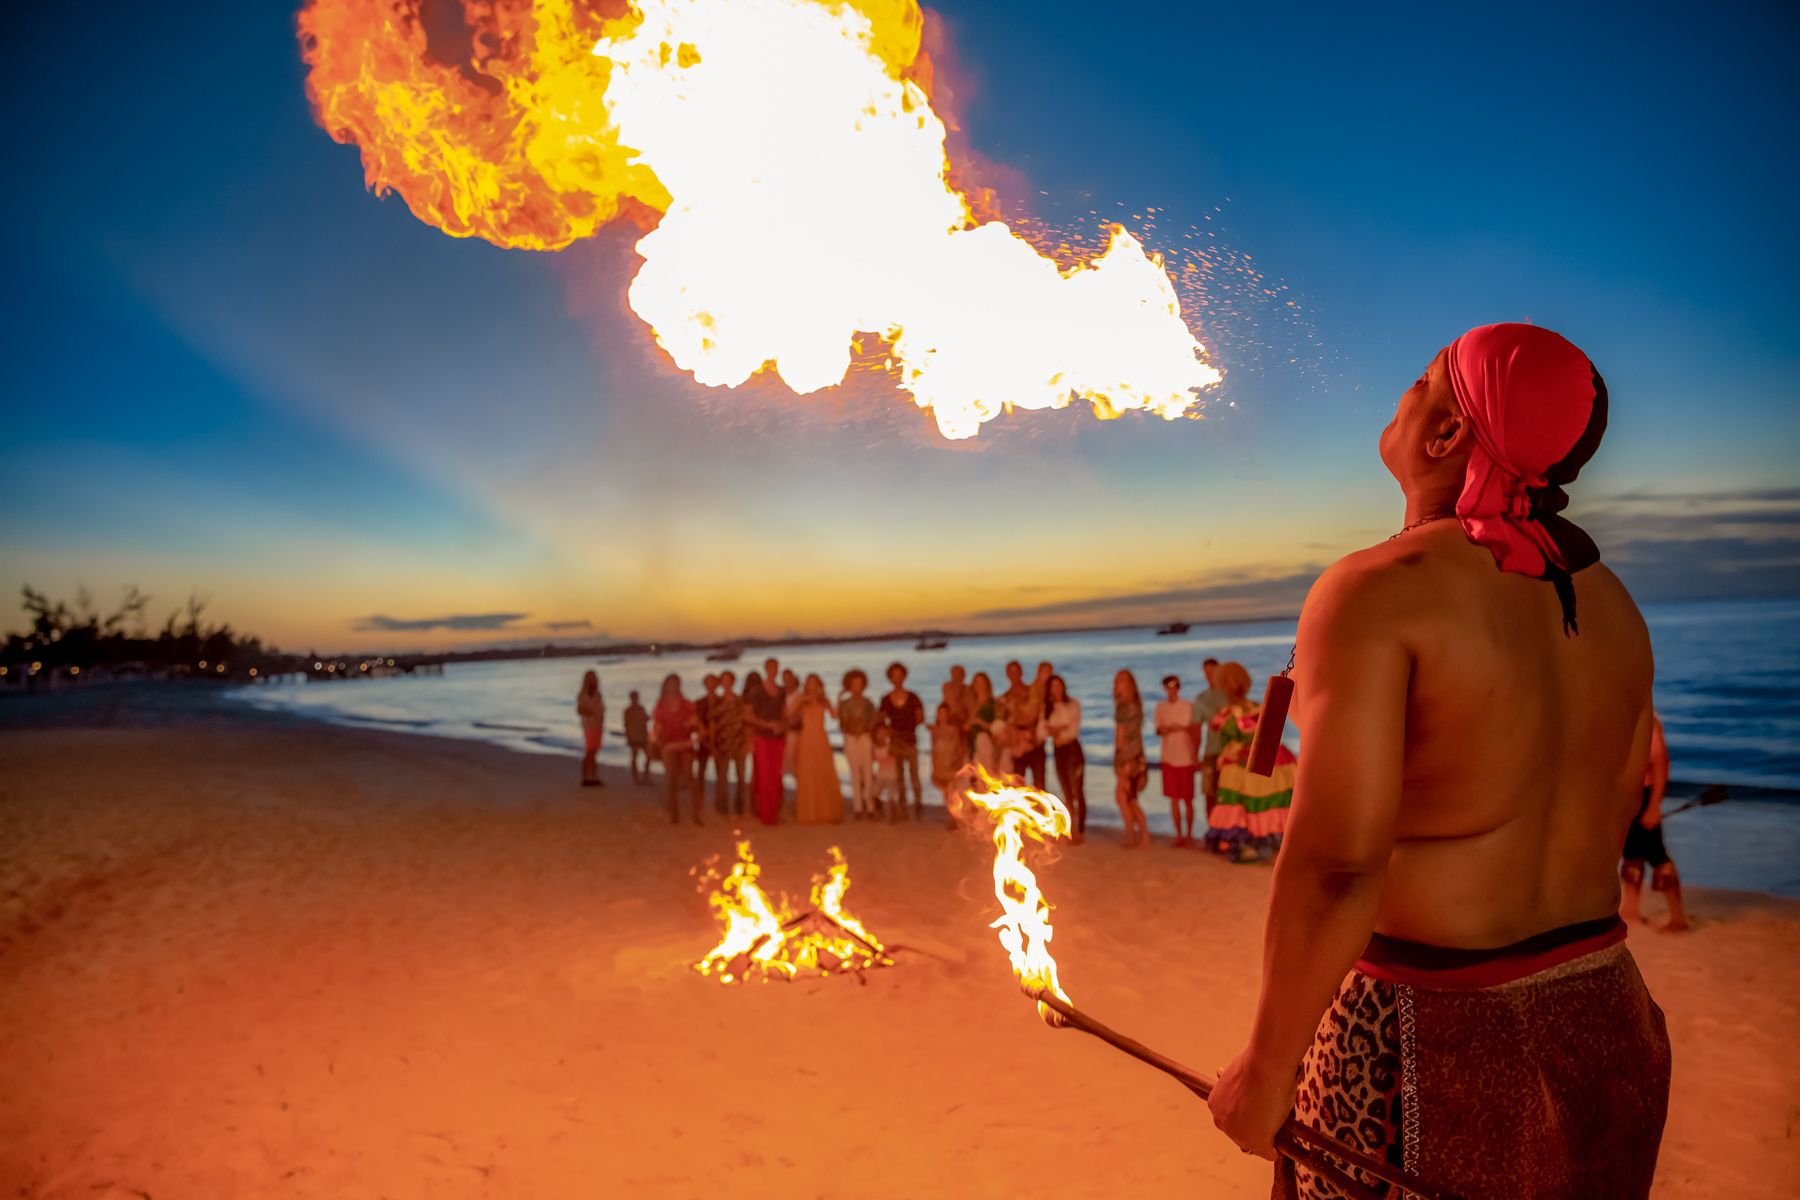 Beaches Turks Caicos Beach Party Fire